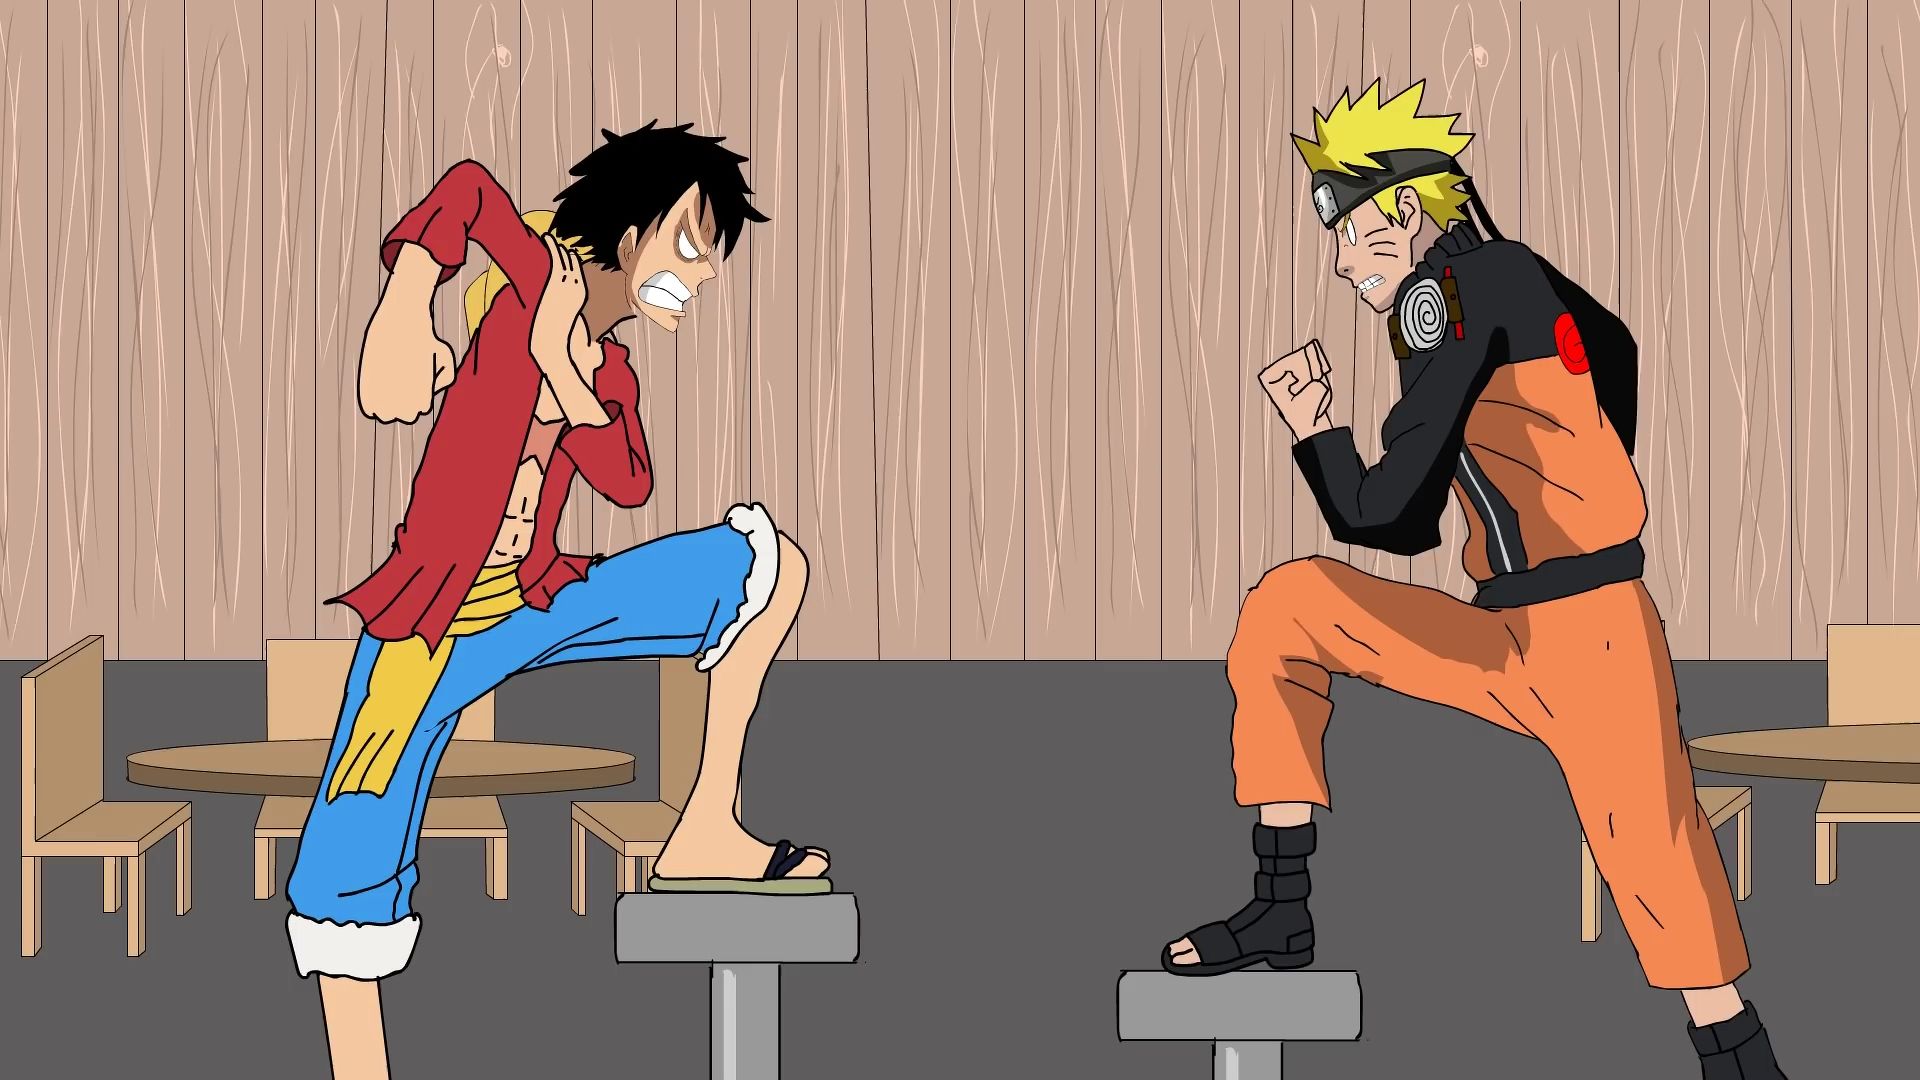 Cùng cảm nhận sự độc đáo của hai nhân vật lừng danh của manga: Luffy và Naruto trong hình nền đầy màu sắc và sinh động! Hình nền luffy và Naruto sẽ mang đến cho bạn những giây phút giải trí tuyệt vời khi nhìn thấy hai anh hùng truyền kỳ này cùng nhau trên nền tảng của bạn.